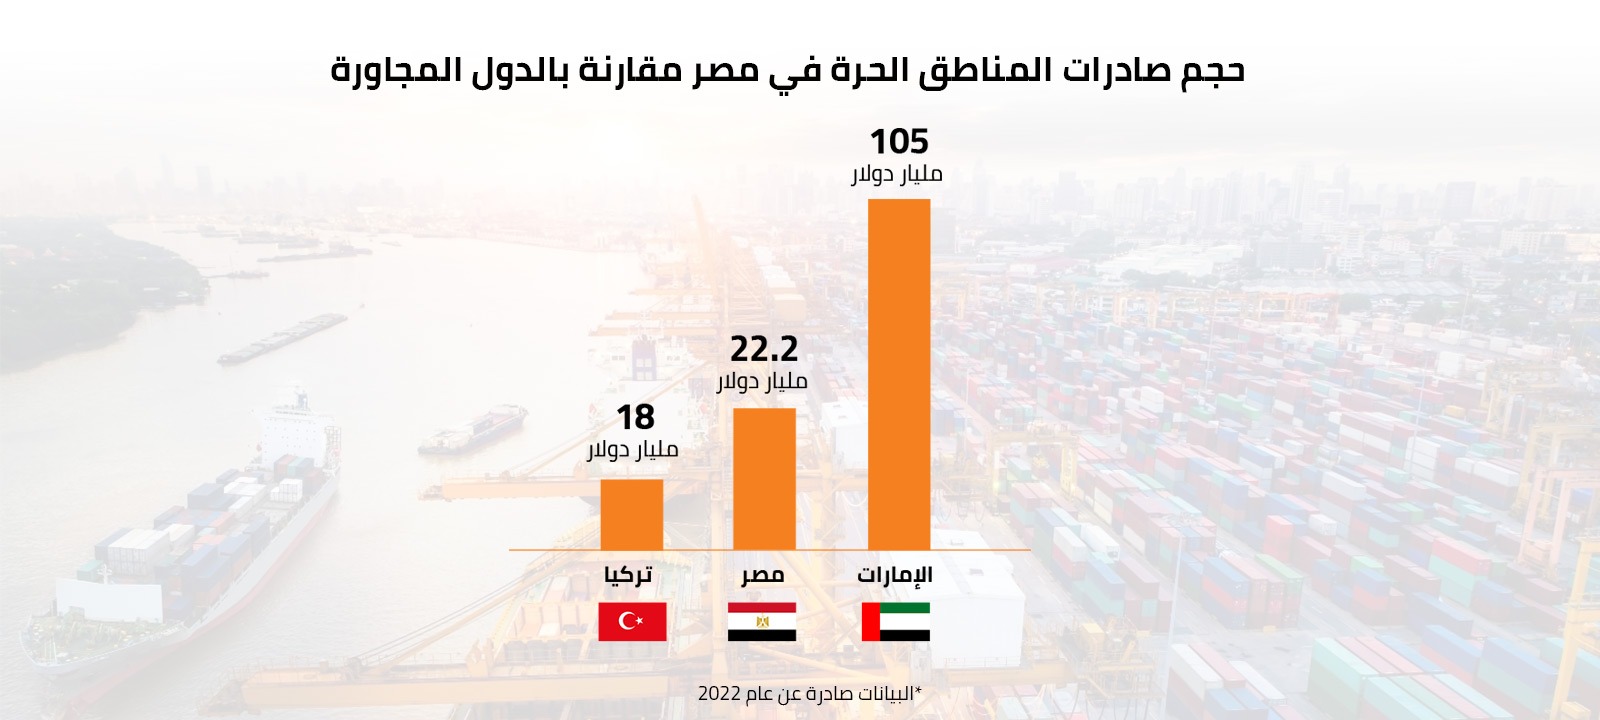 حصري| دراسة حديثة تكشف ضعف أداء المناطق الحرة المصرية مقارنة بتركيا والإمارات